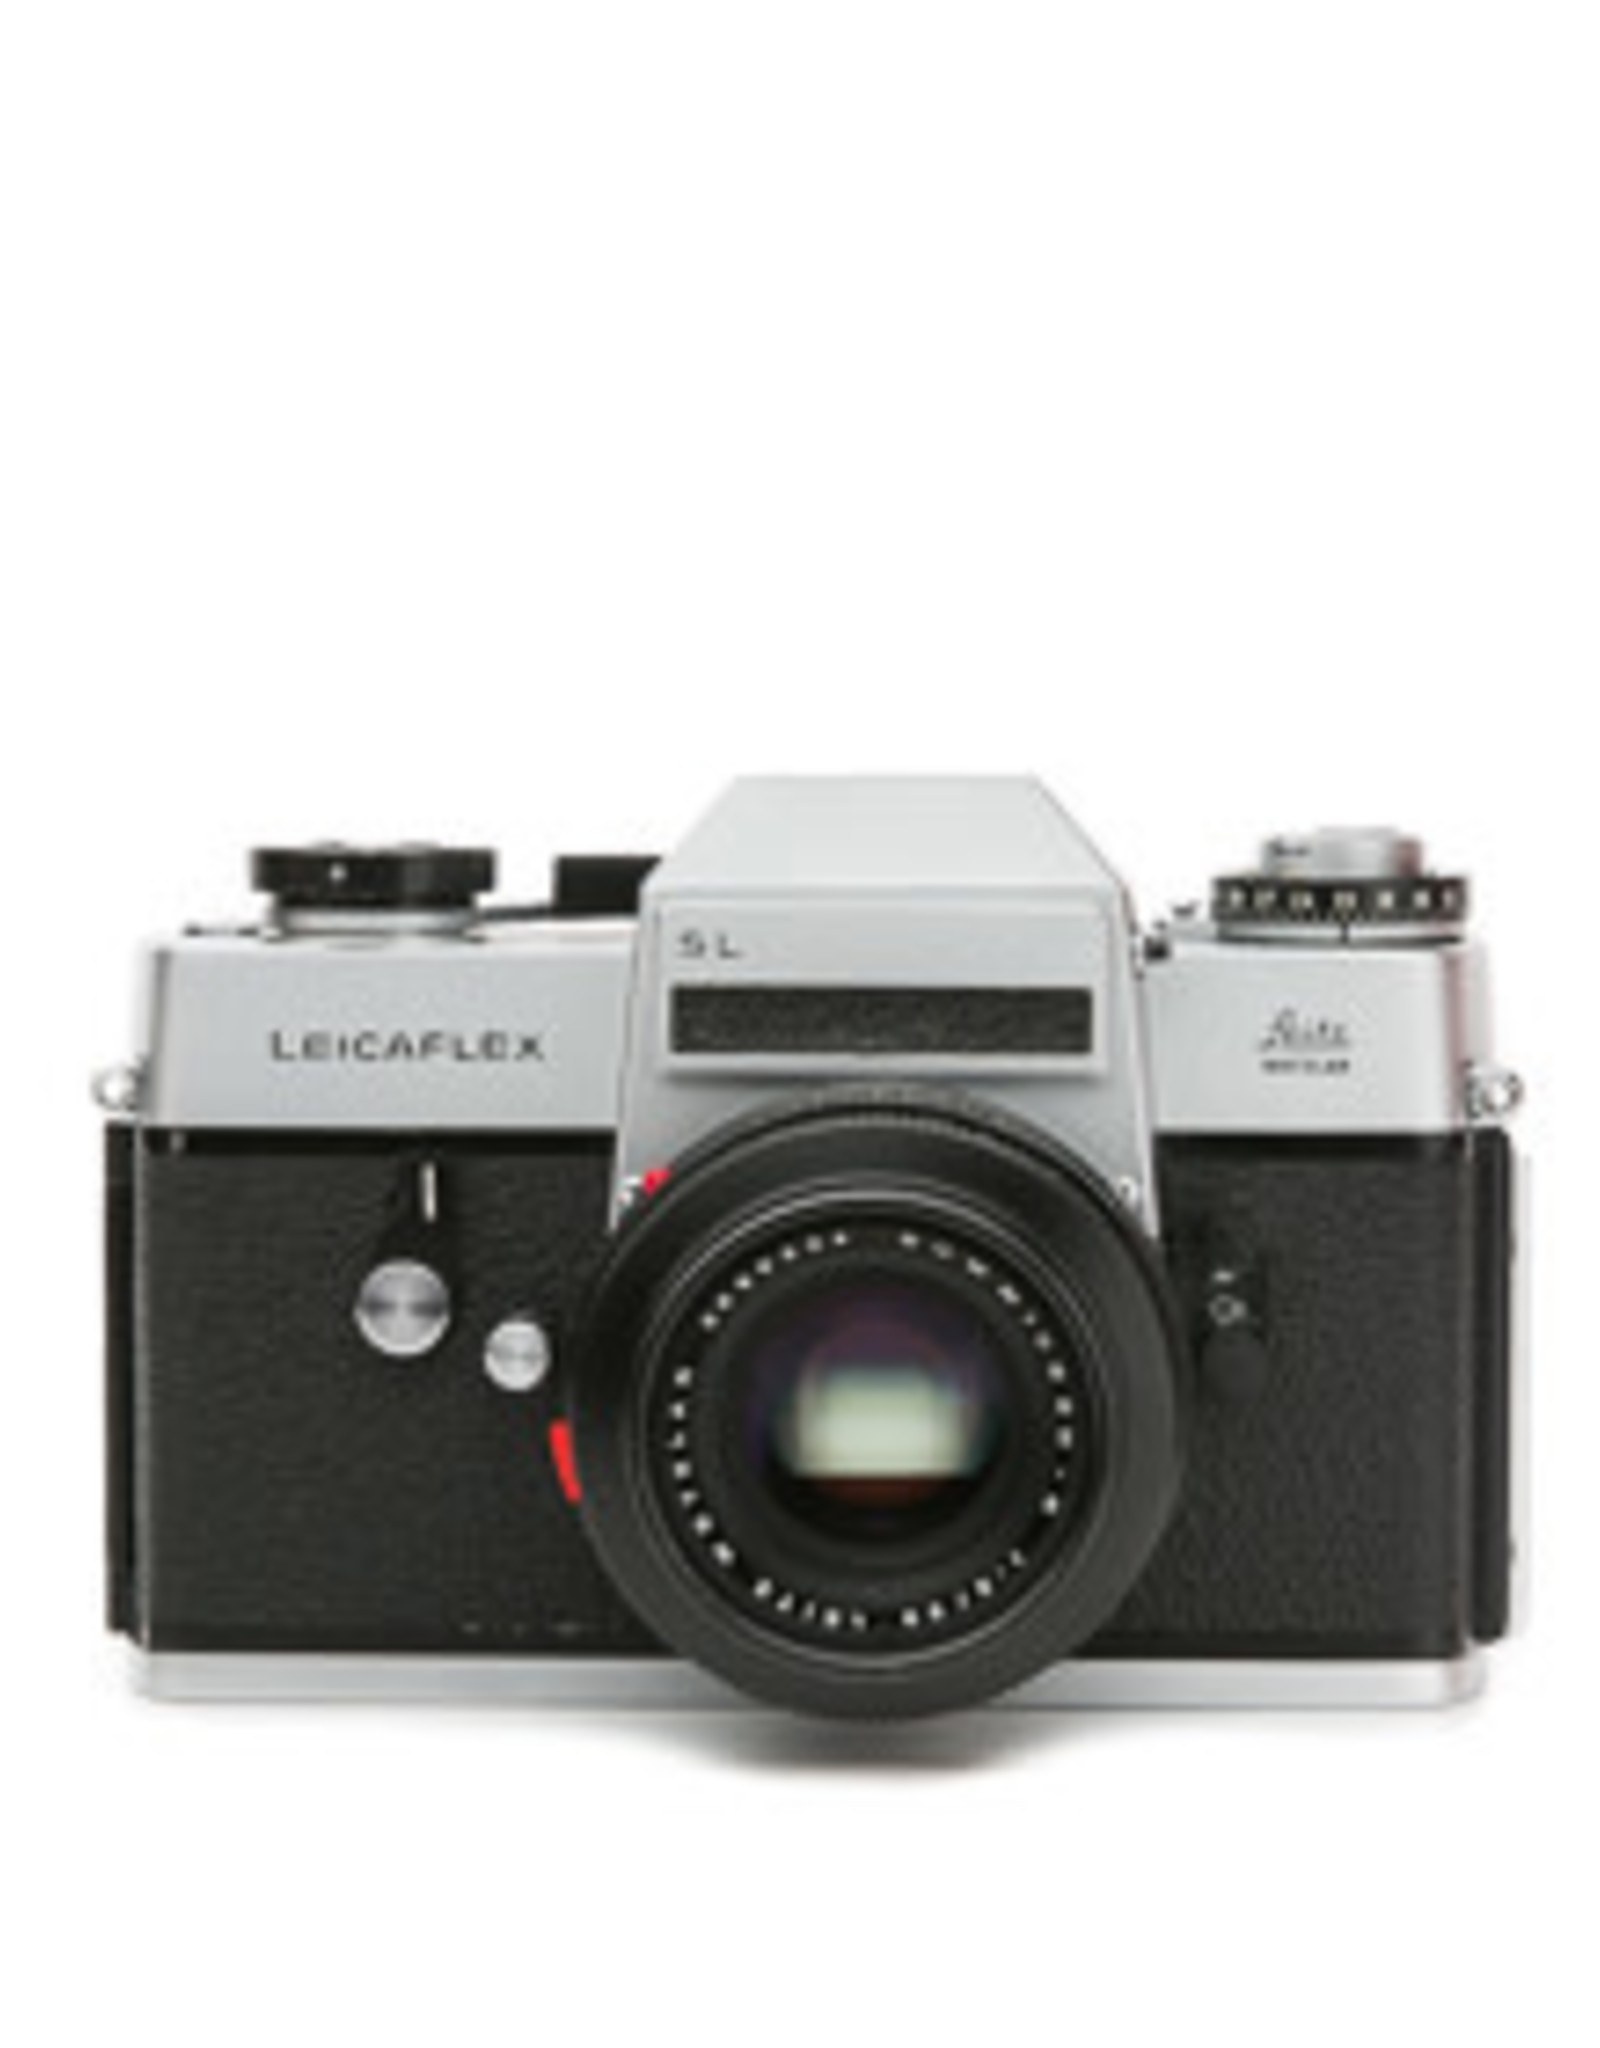 Leica Leica Leicaflex SL 35mm SLR Camera Body w/Summicron-R 50mm F2